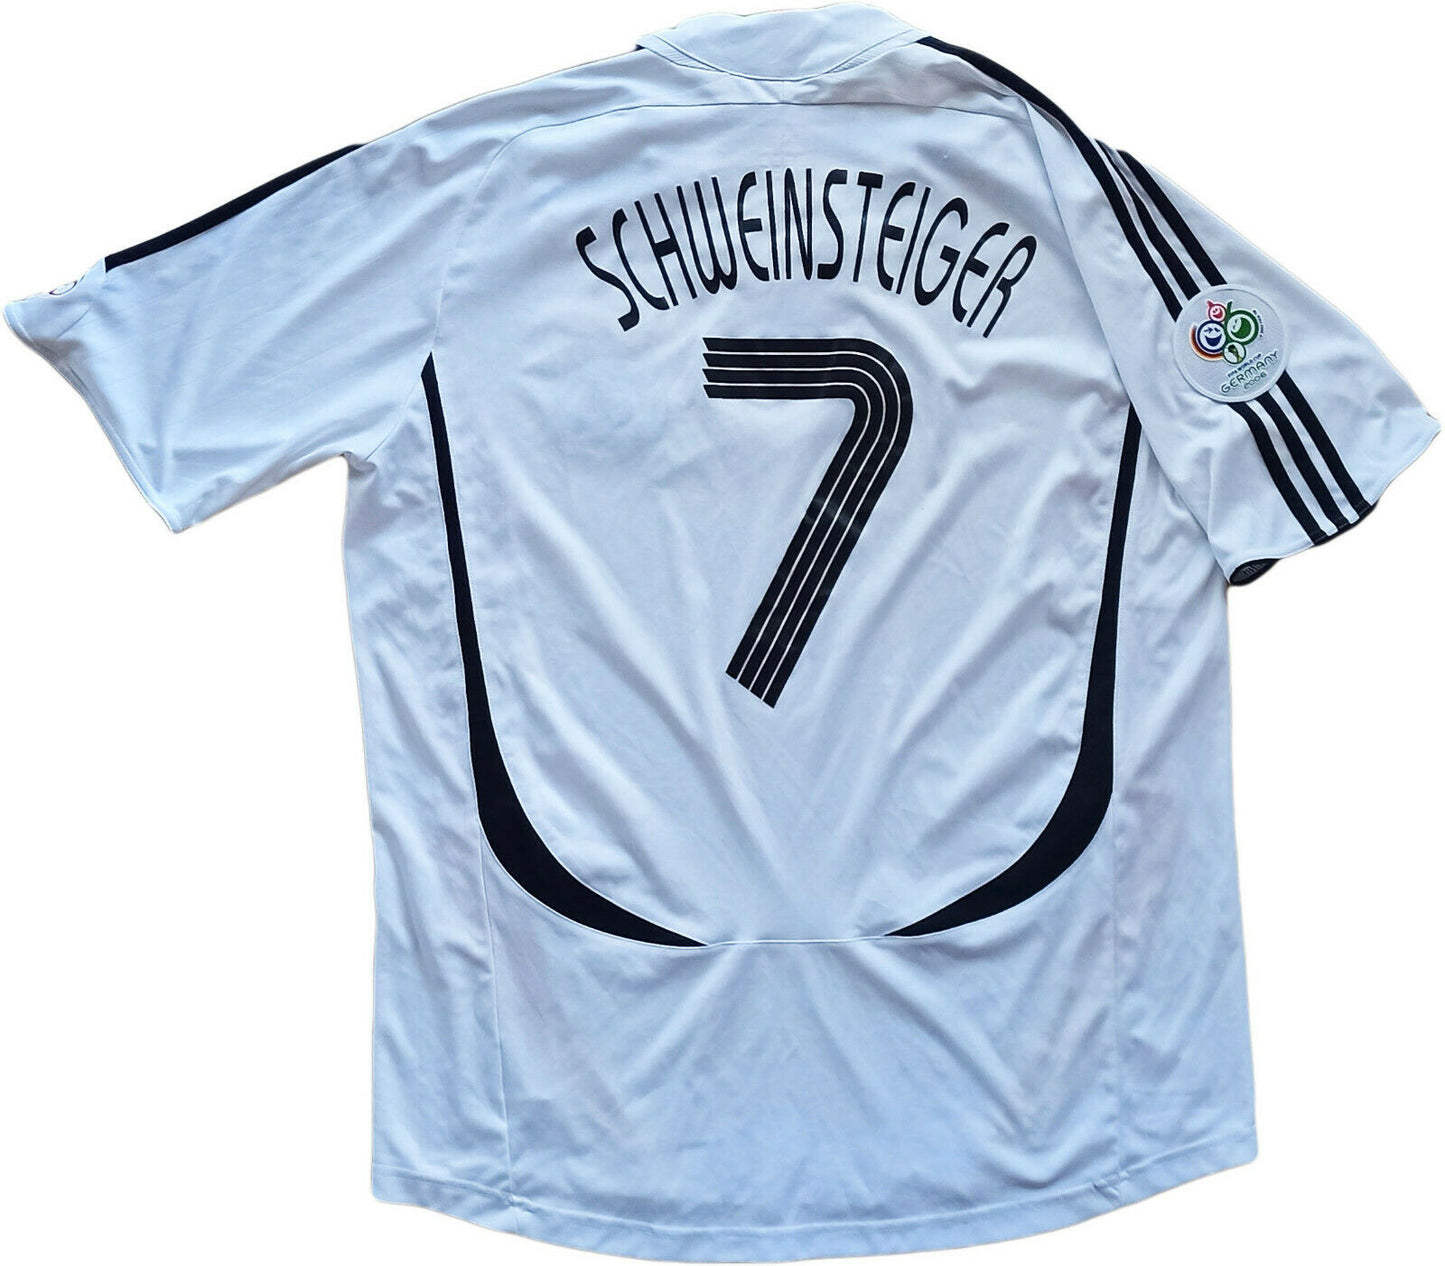 maglia calcio Germania Schweinsteiger 2006 Germany deutschland World Cup vintage